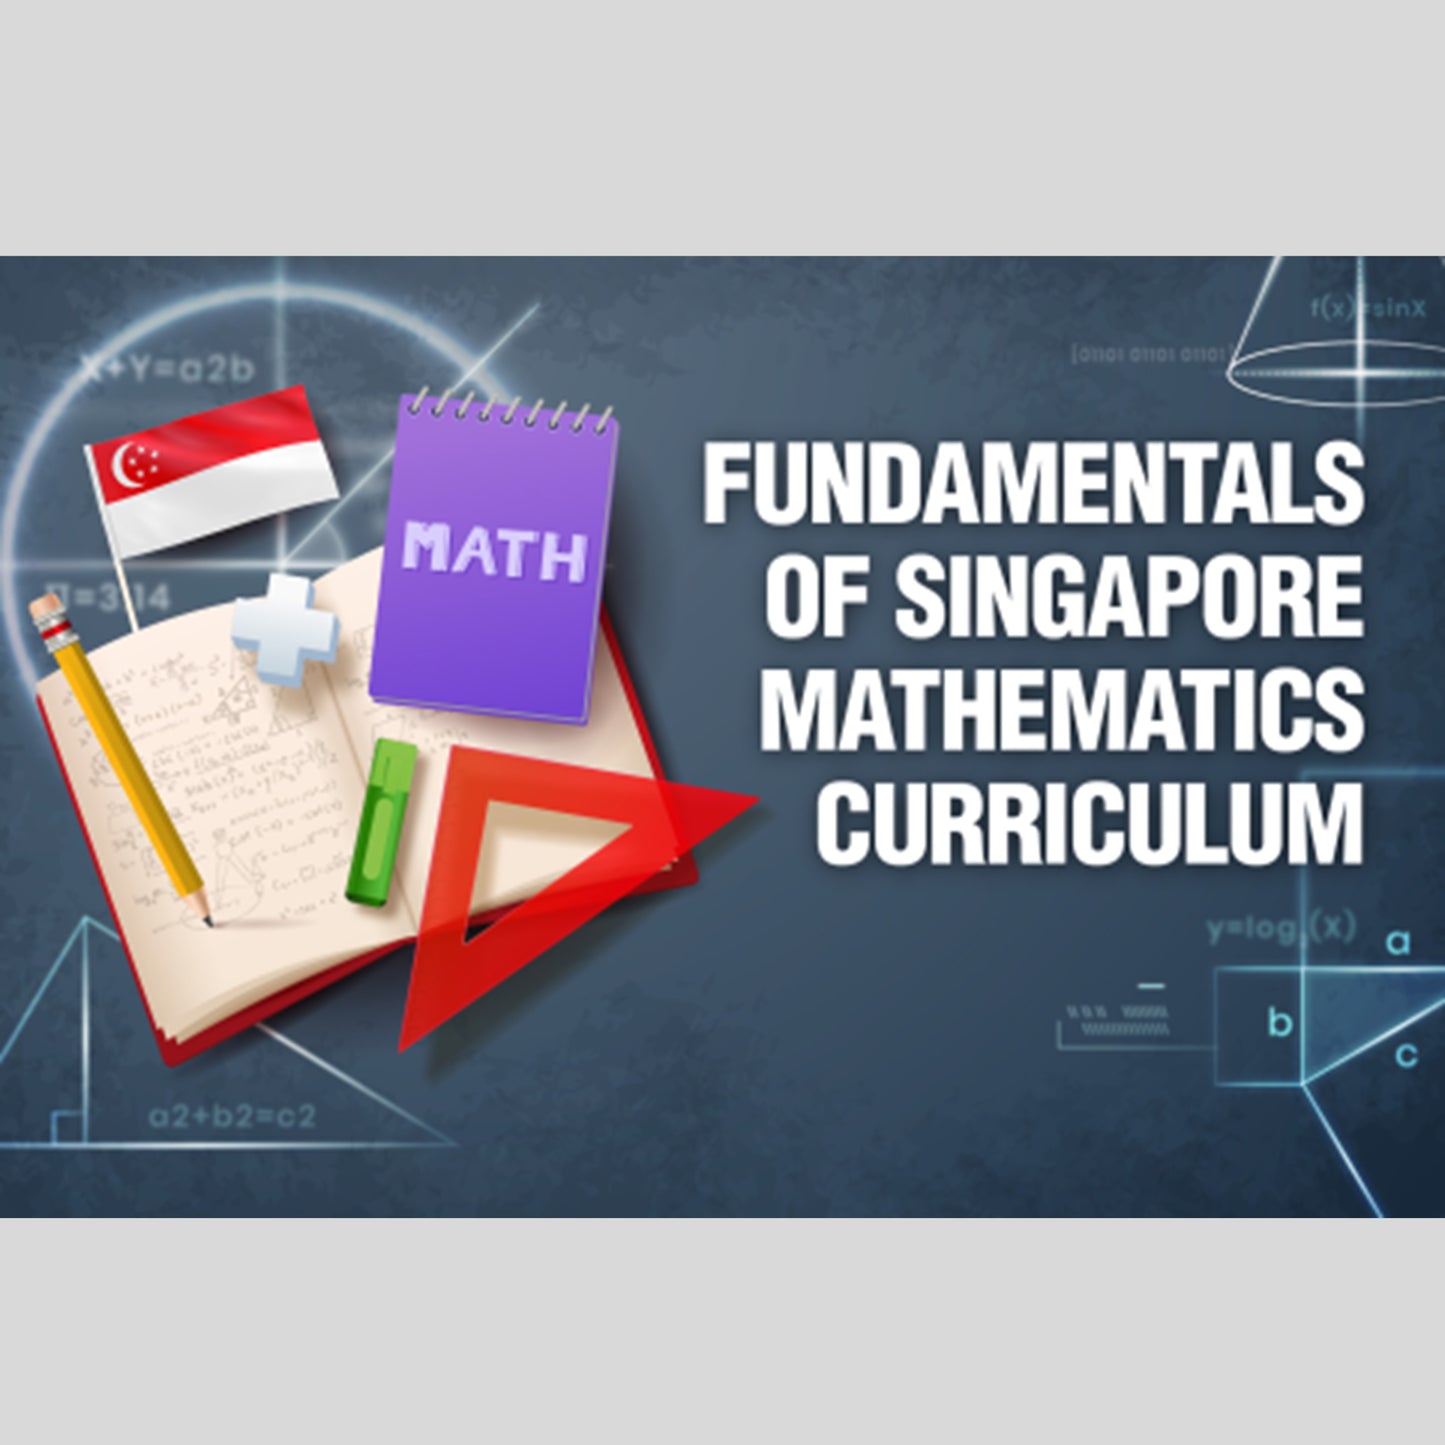 Fundamentals of Singapore Mathematics Curriculum